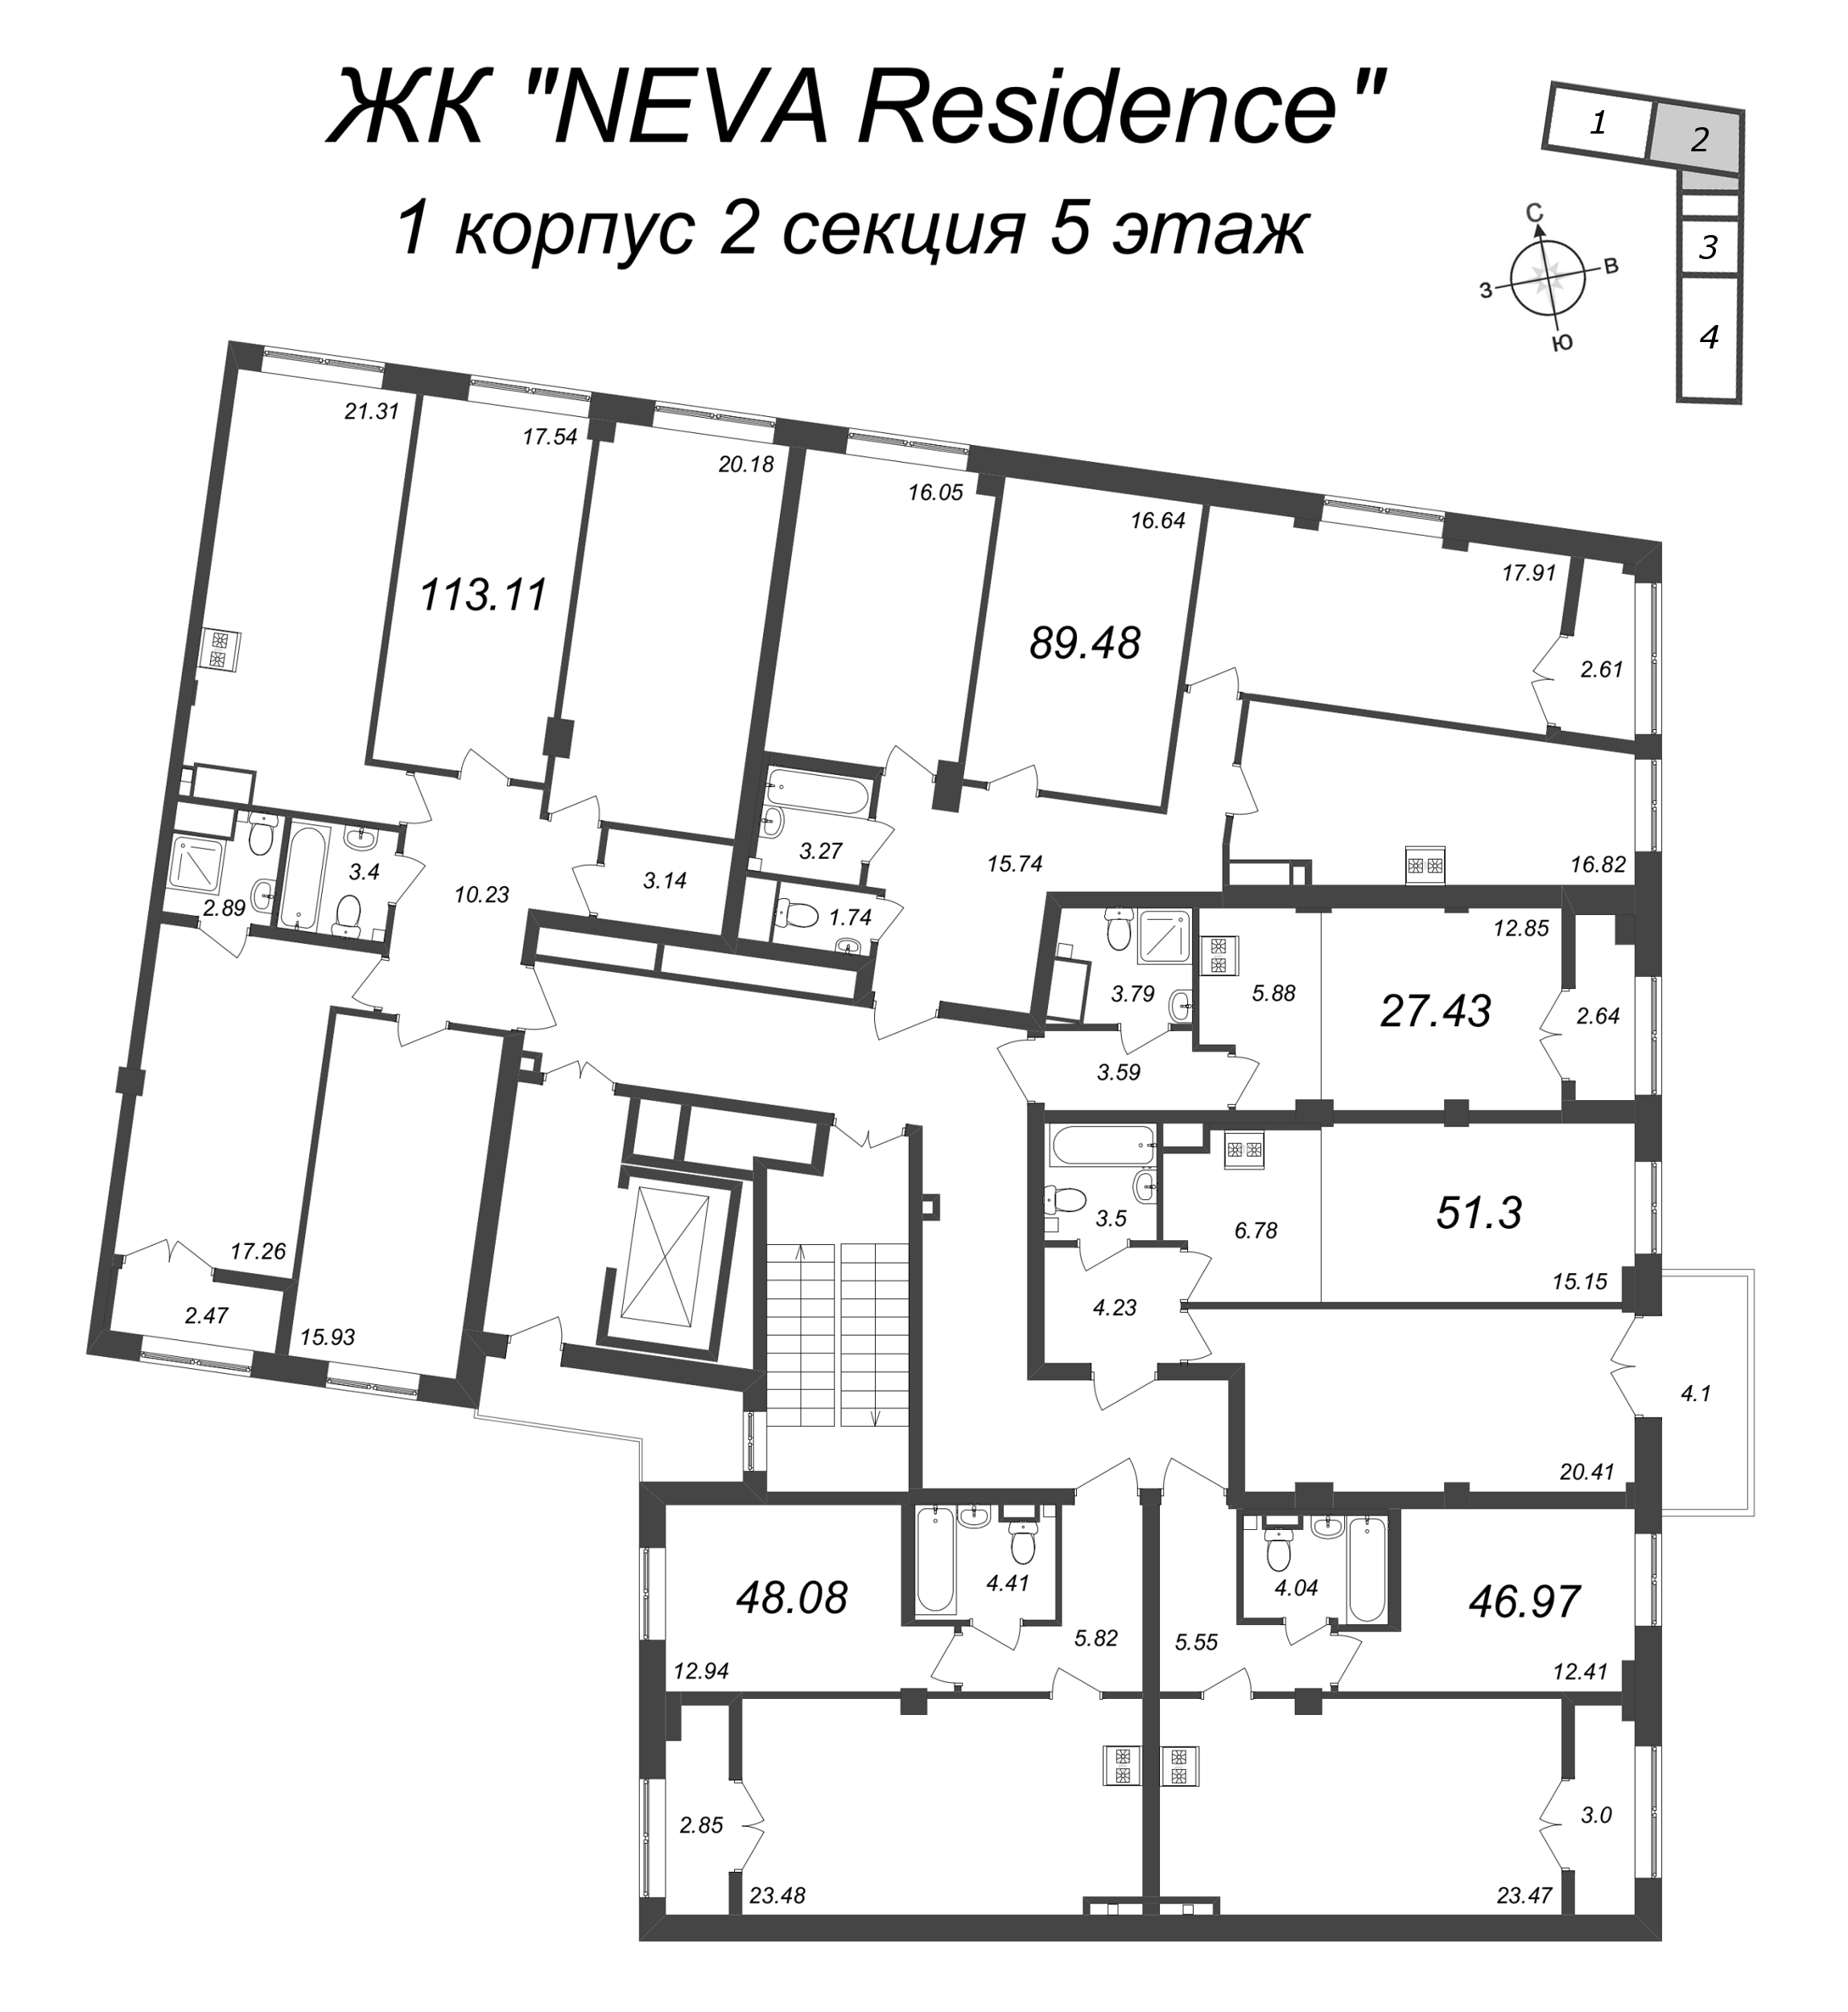 5-комнатная (Евро) квартира, 113.11 м² в ЖК "Neva Residence" - планировка этажа